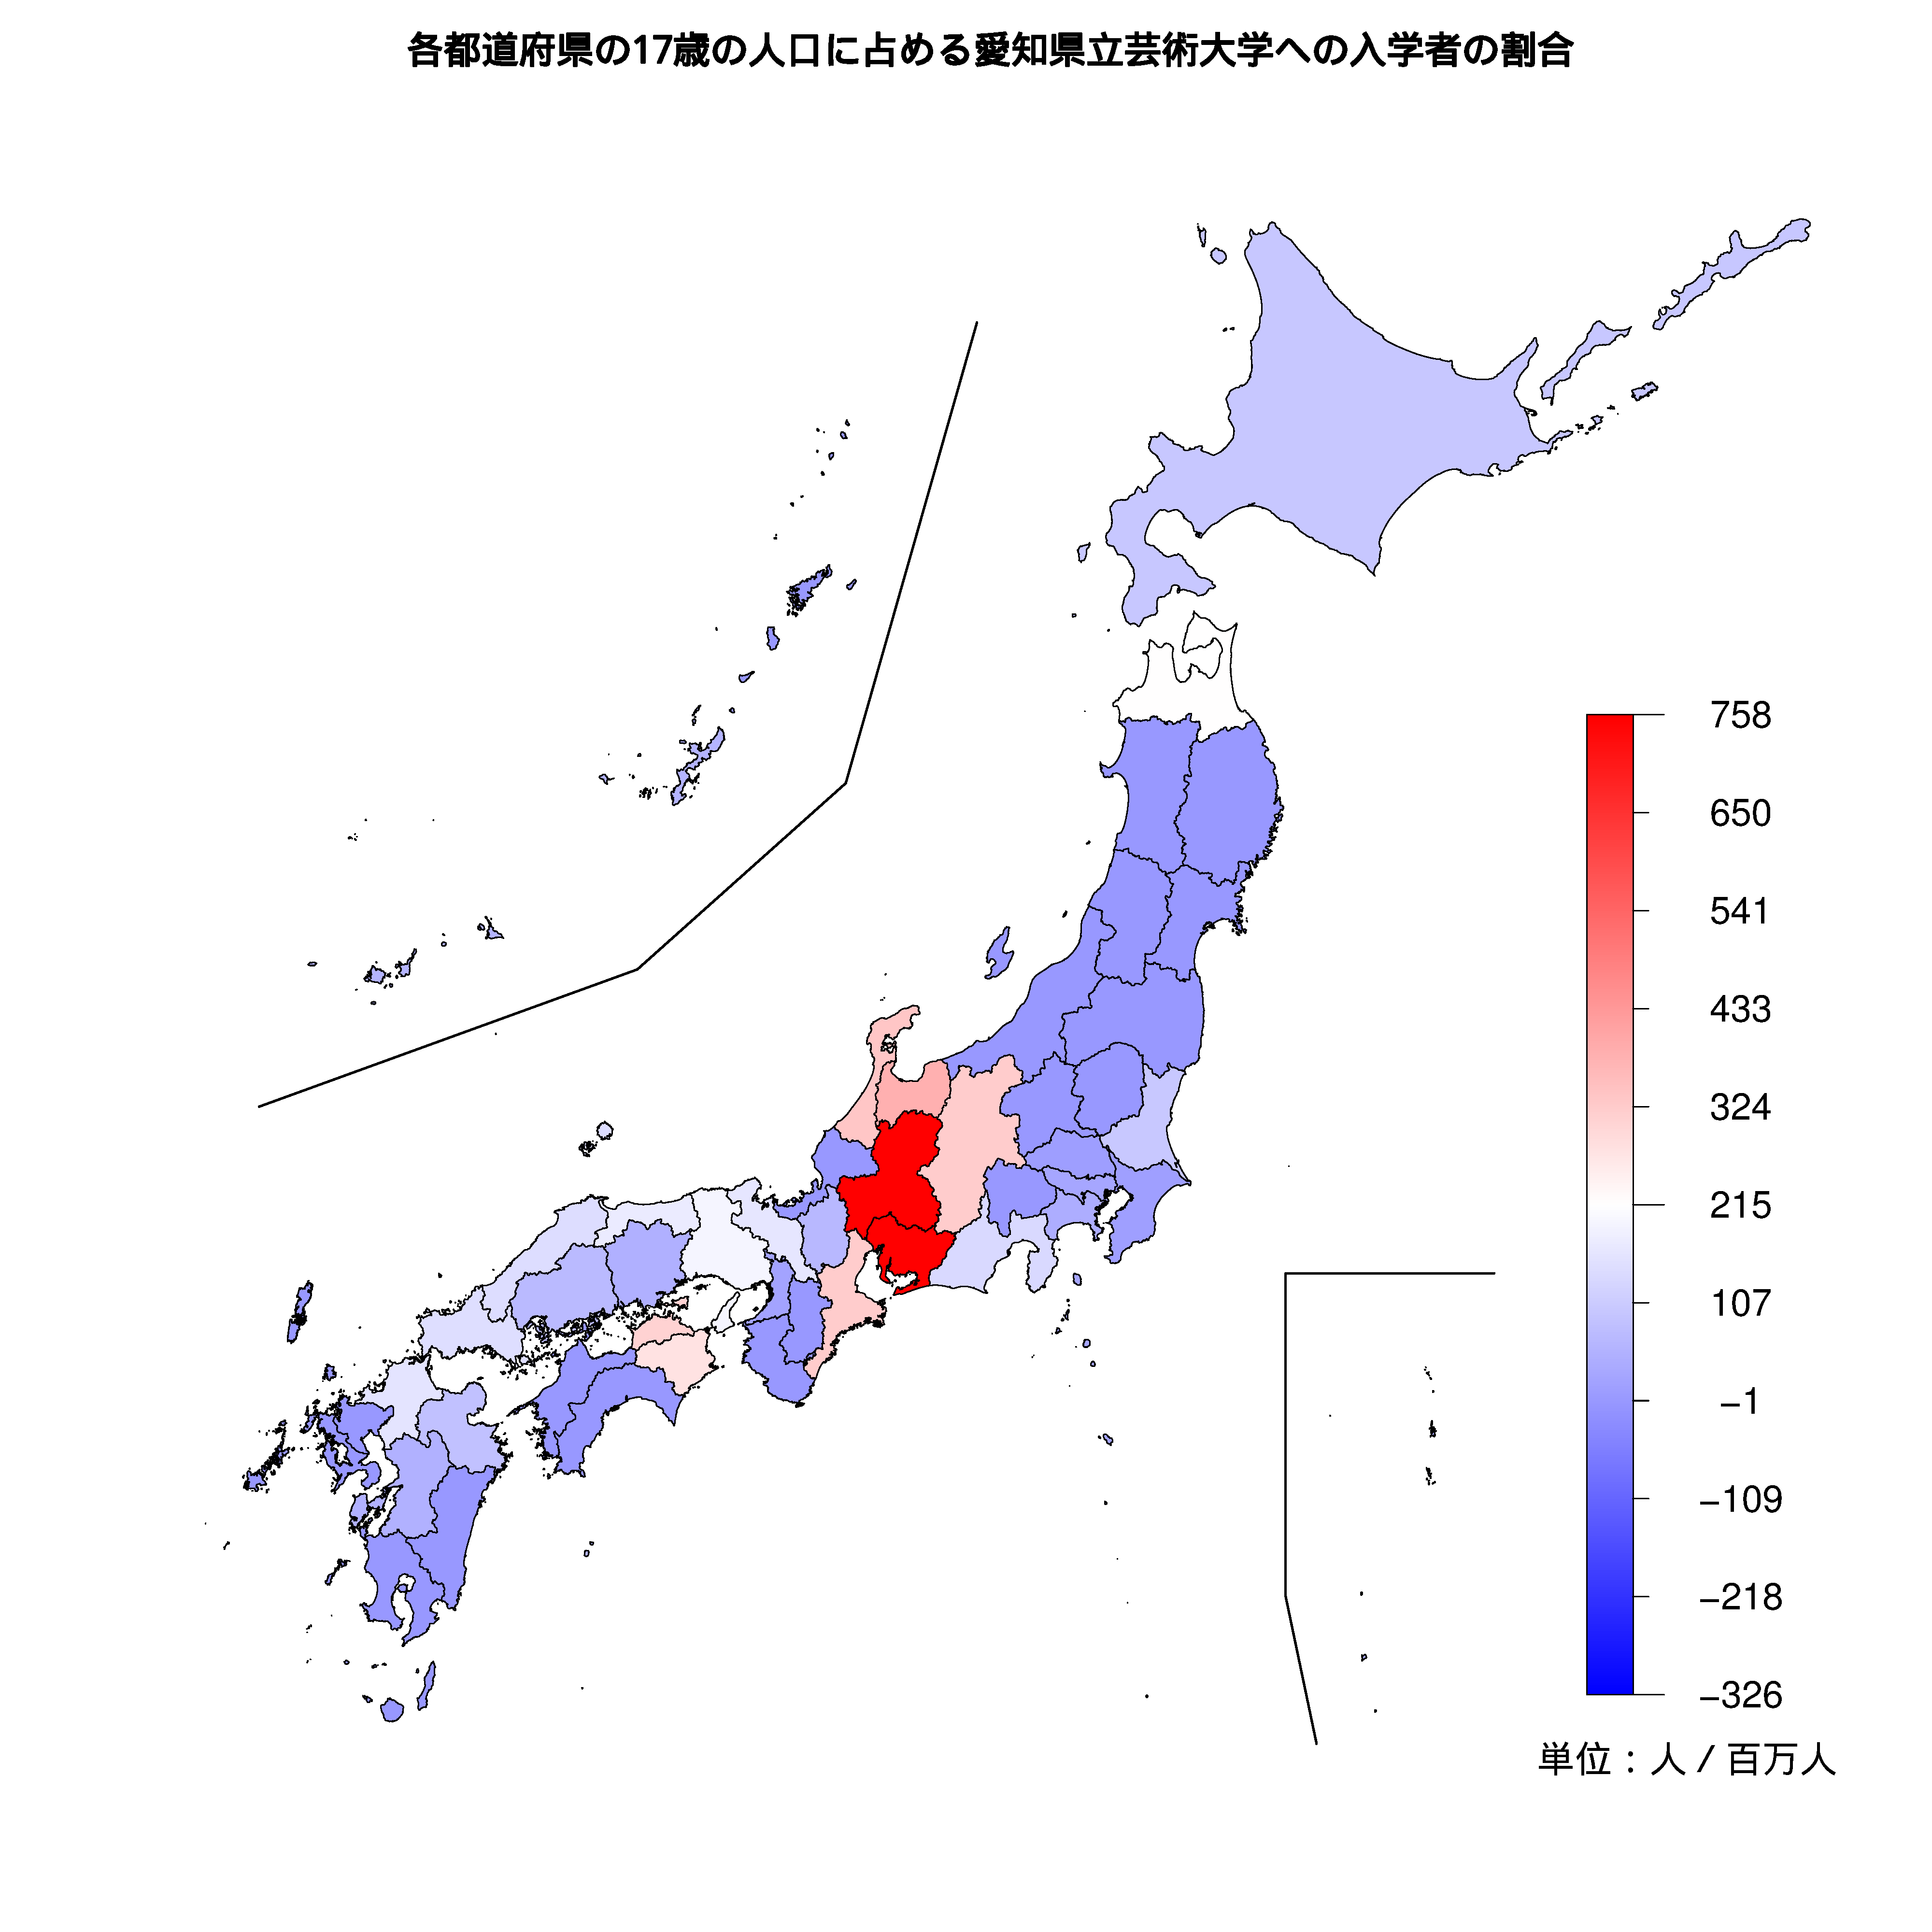 愛知県立芸術大学への入学者が多い都道府県の色分け地図